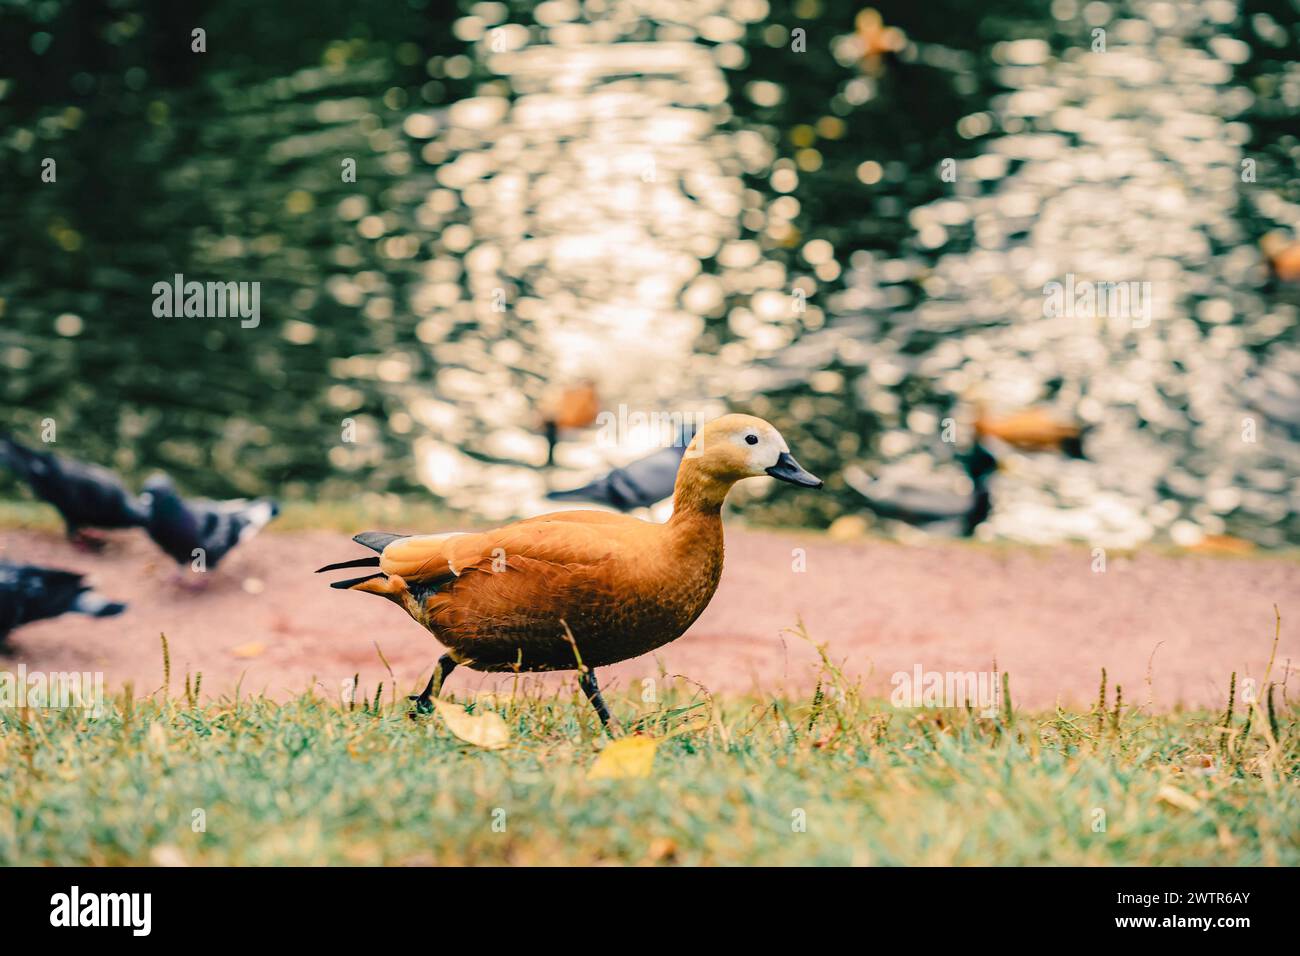 Ente läuft auf dem Gras in der Nähe eines Wassers, die Szene ist friedlich und ruhig. Herbst, Laubfall-Konzept Stockfoto